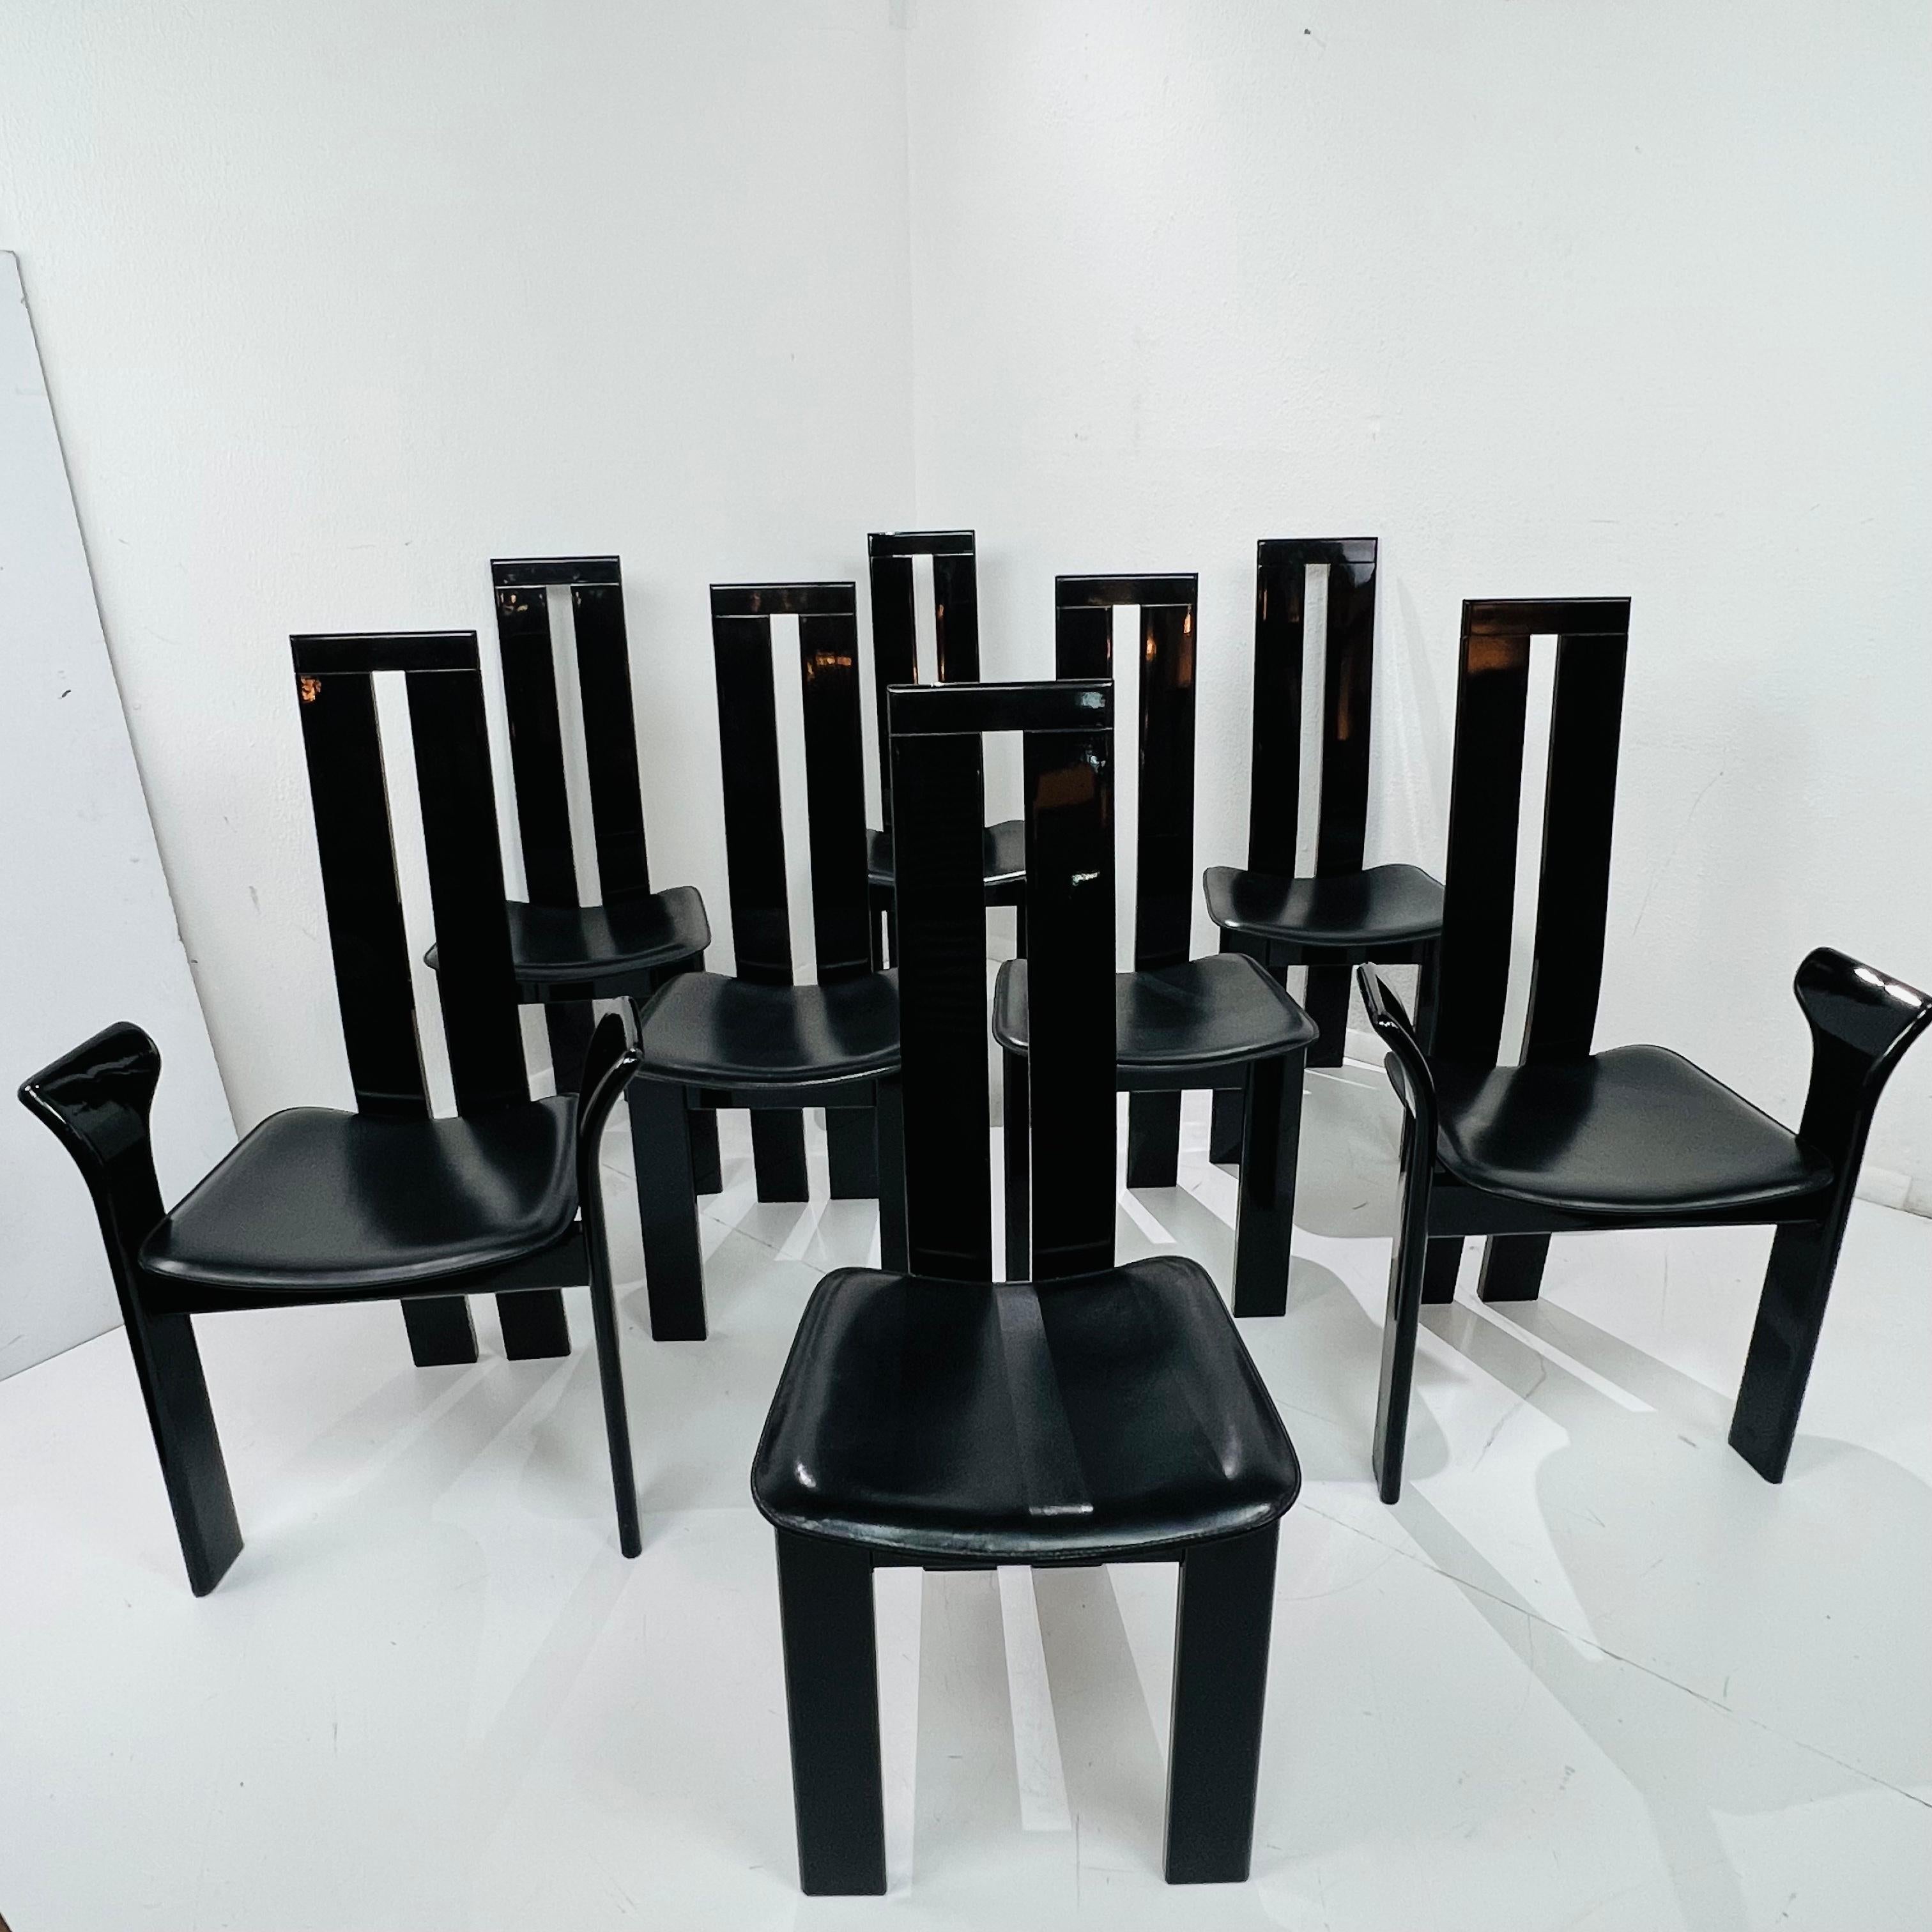 Ensemble chic de chaises de salle à manger post-moderne conçu par Pietro Costantini à San Vito al Torre en Italie. Les chaises iconiques sont dotées d'un cadre sculptural laqué noir piano et d'un pad d'assise en cuir noir. L'ensemble se compose de